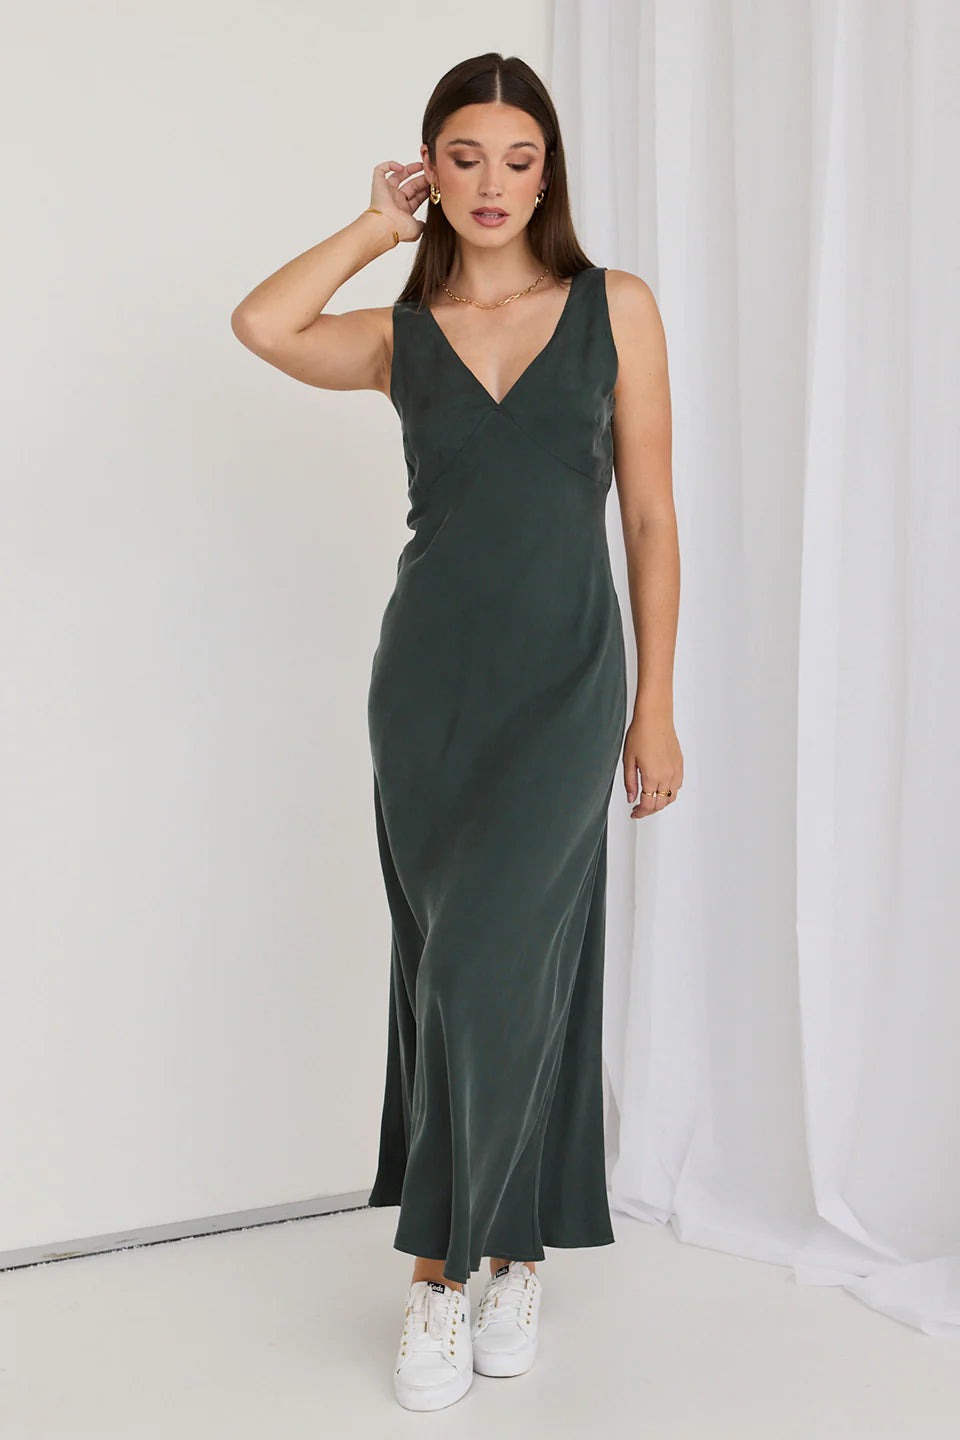 Horizon Forest Cupro Blend Sleeveless Maxi Dresss